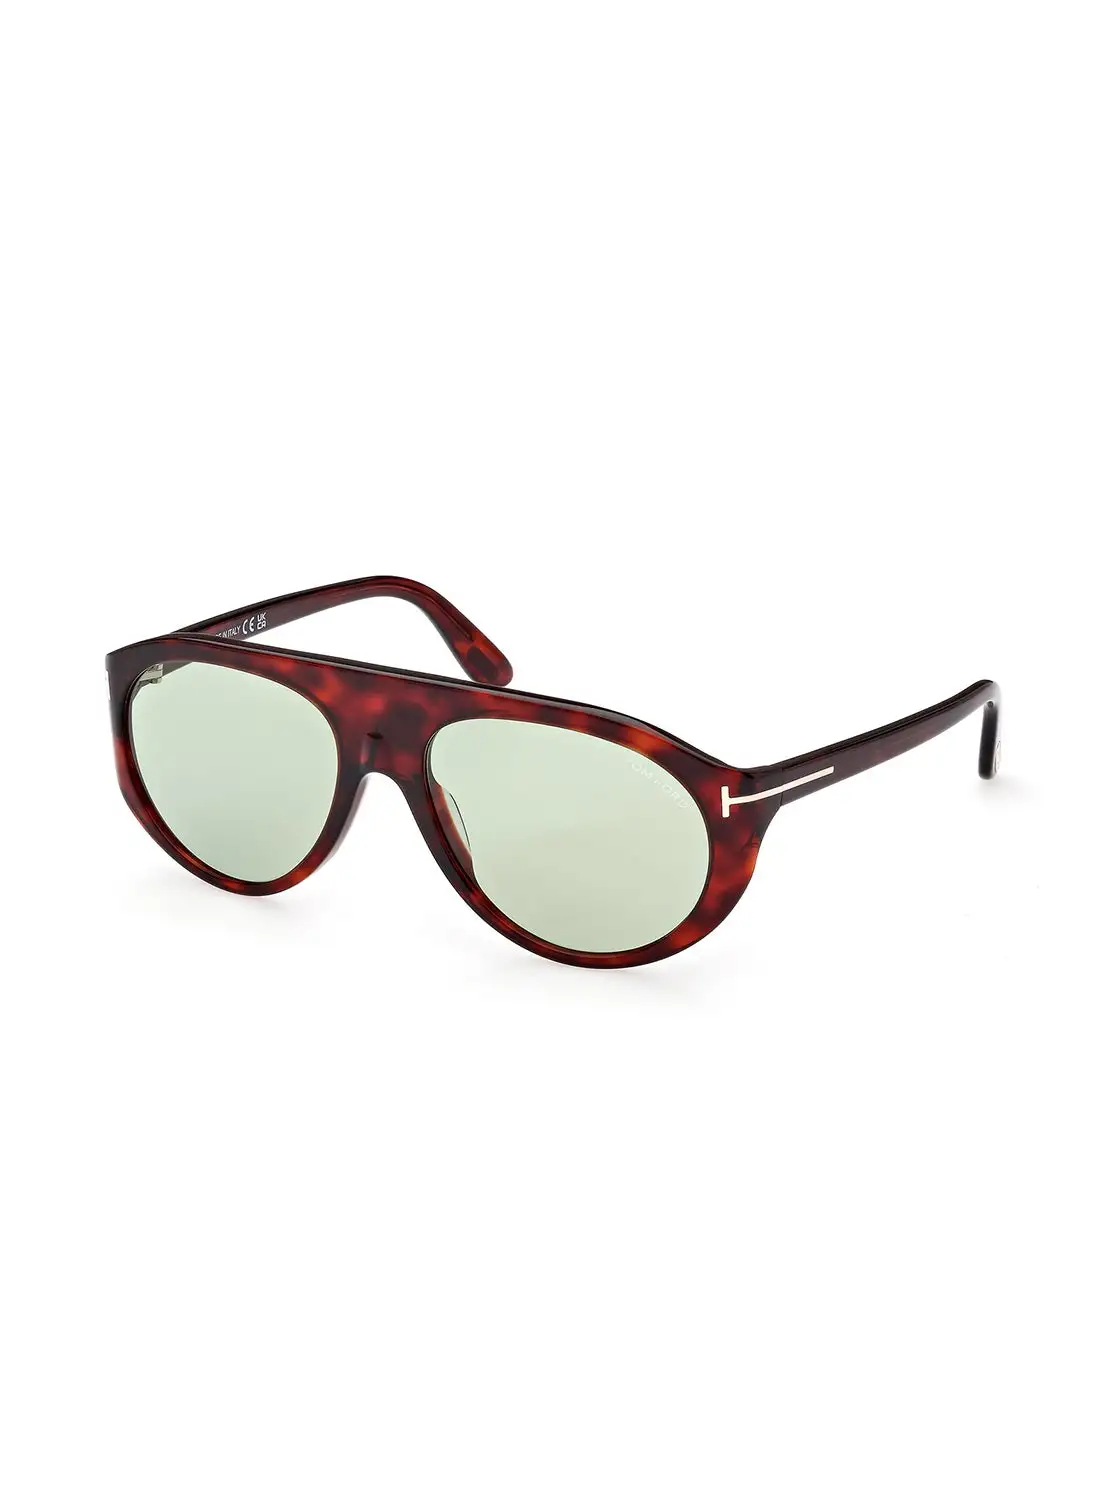 TOM FORD Men's Photochromic Pilot Sunglasses - FT100154N57 - Lens Size: 57 Mm